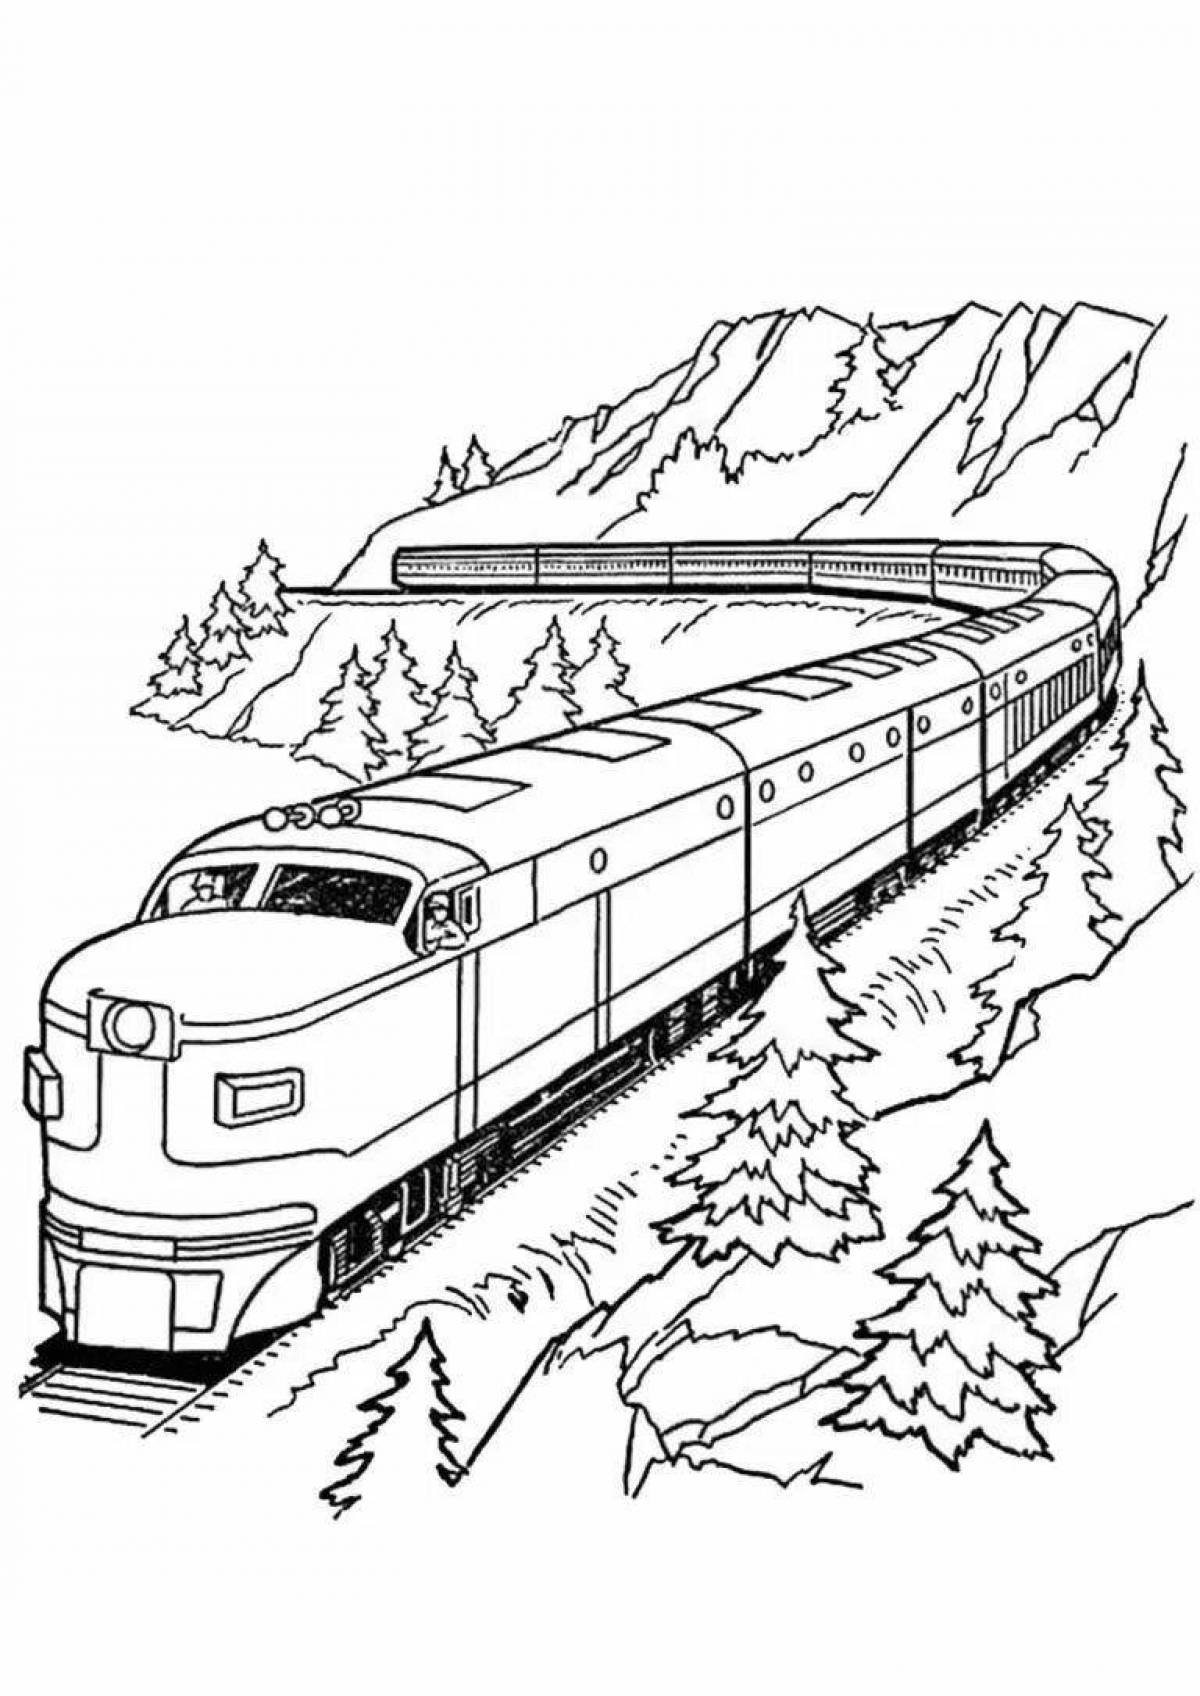 Иллюстрация веселого поезда